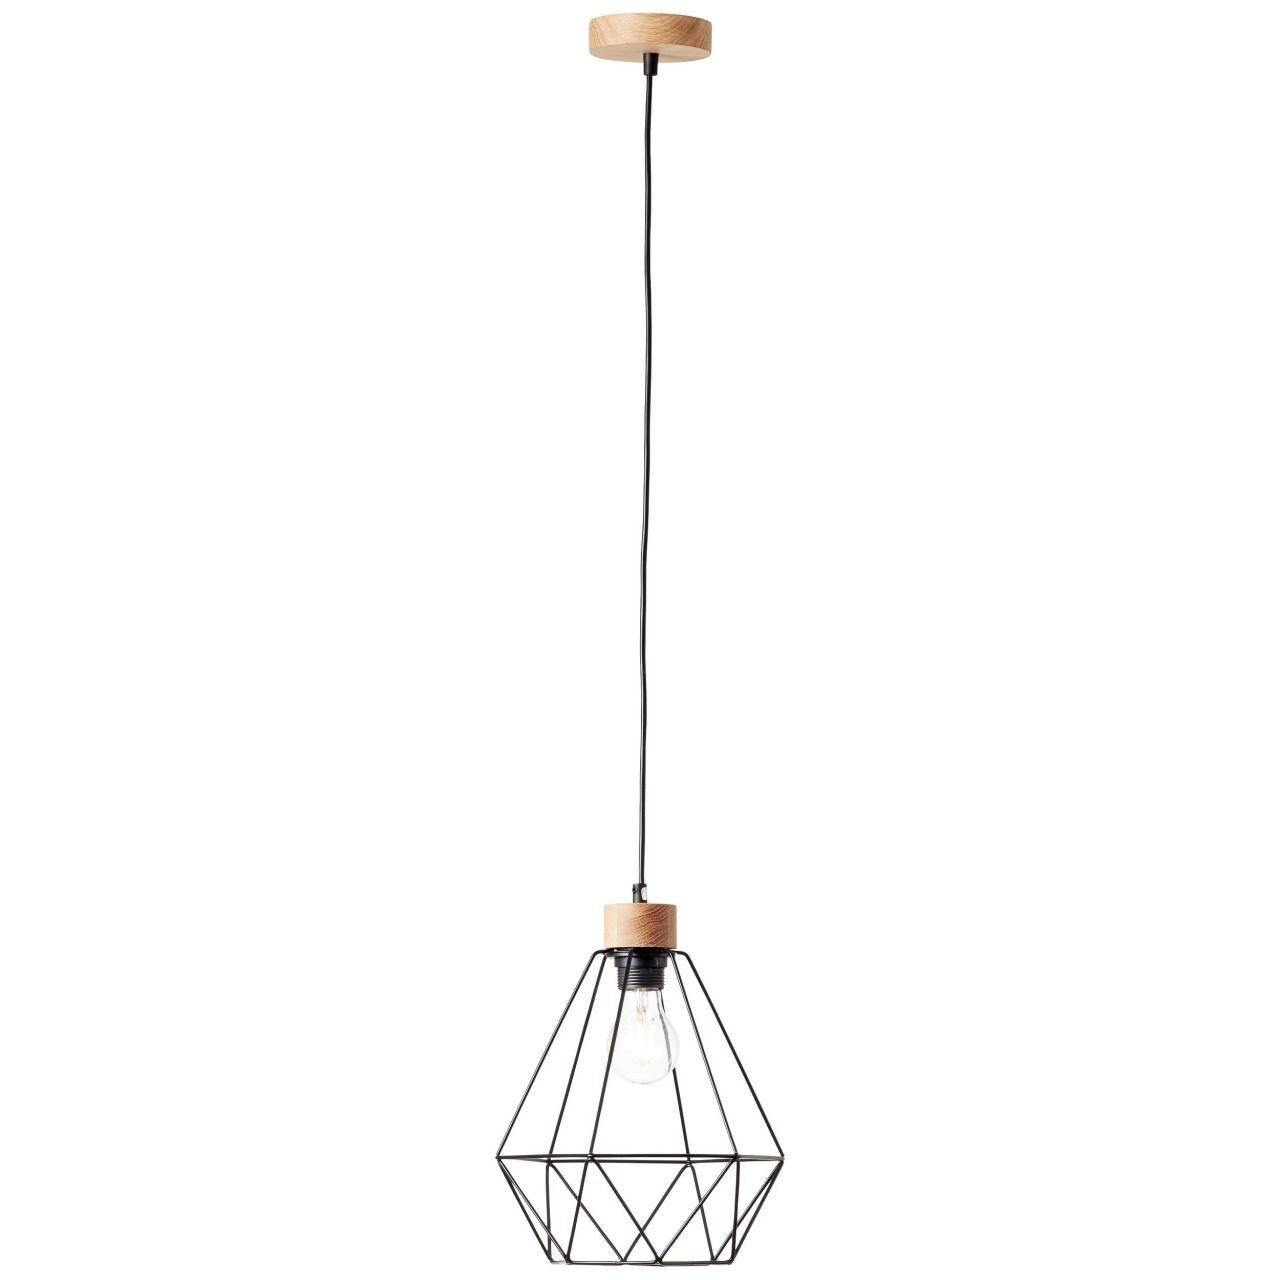 BRILLIANT Lampe, Drewno Pendelleuchte 25cm schwarz/holzfarbend, 1x A60, E27, 25W, Holz aus nachhaltiger Waldwirtschaft (